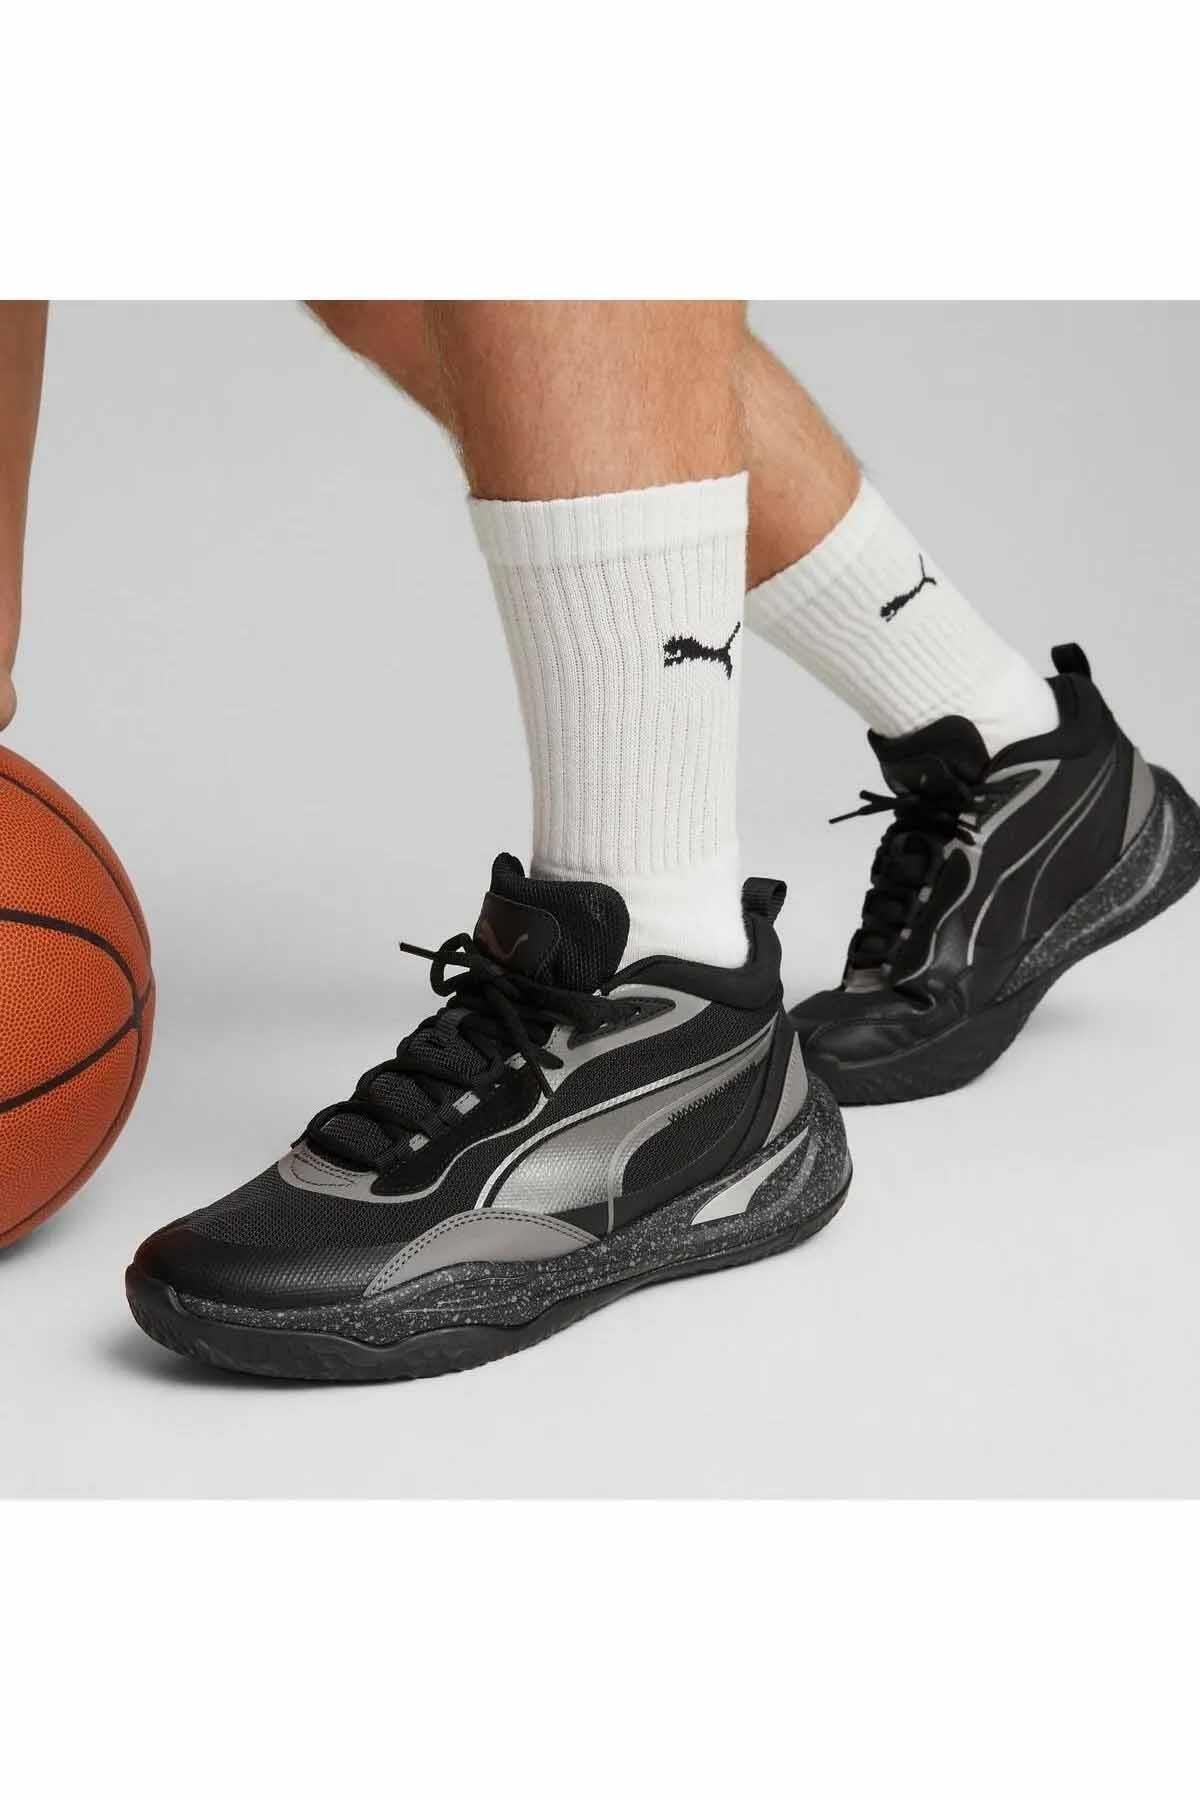 Puma Basketbol Ayakkabısı Playmaker Pro Erkek Basketbol Ayakkabı 379014-01 SIYAH